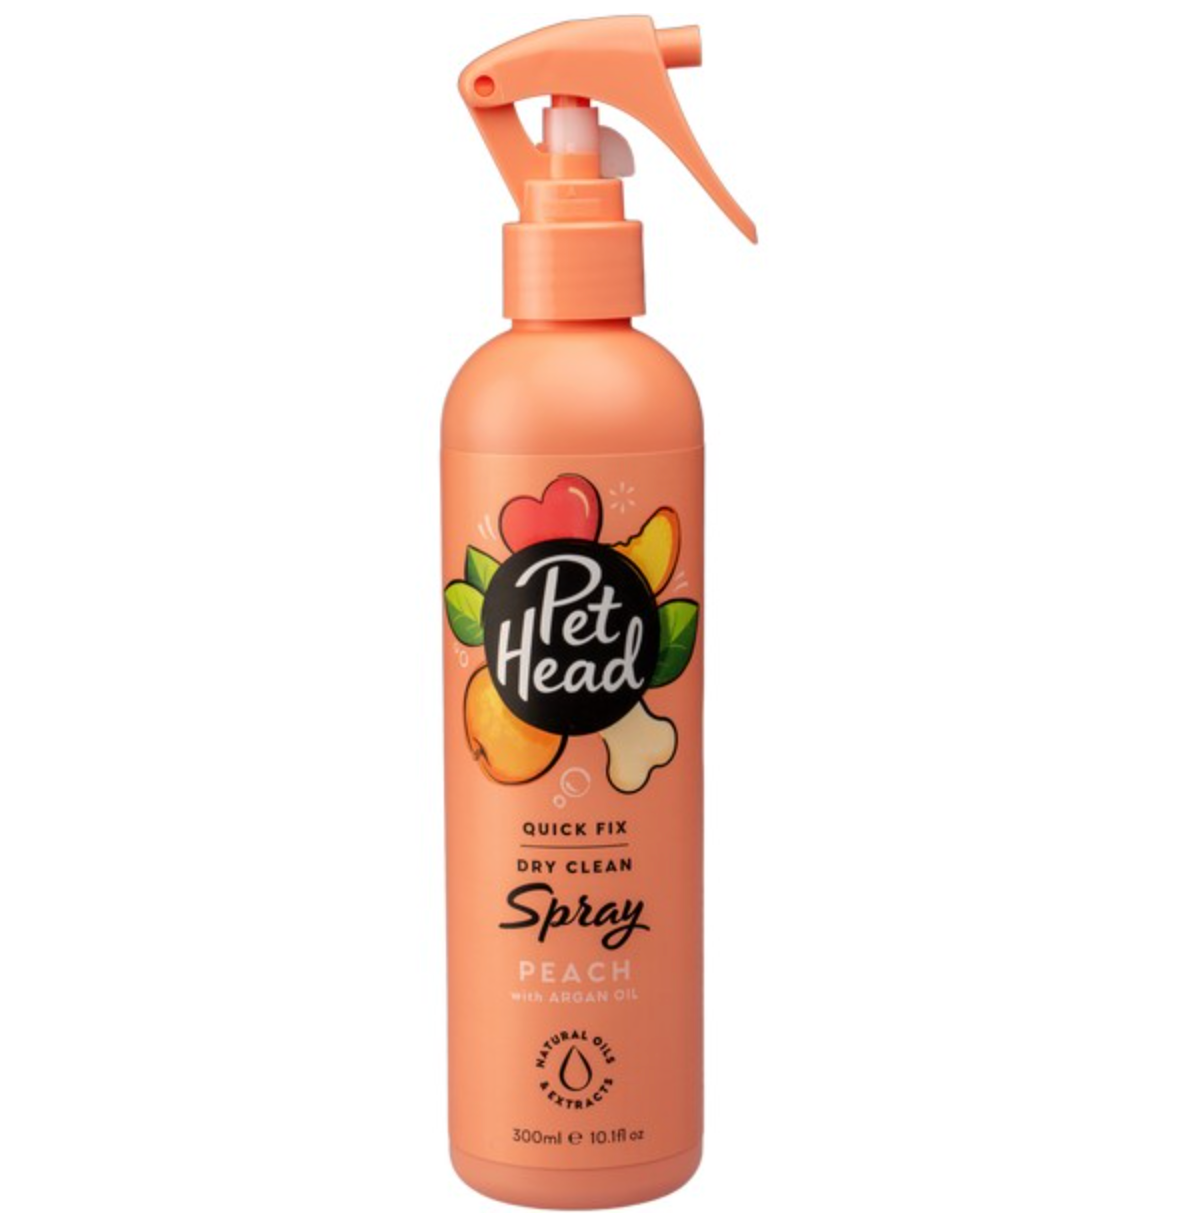 Pet Head Quick Fix Dry Clean Spray Peach (300ml)